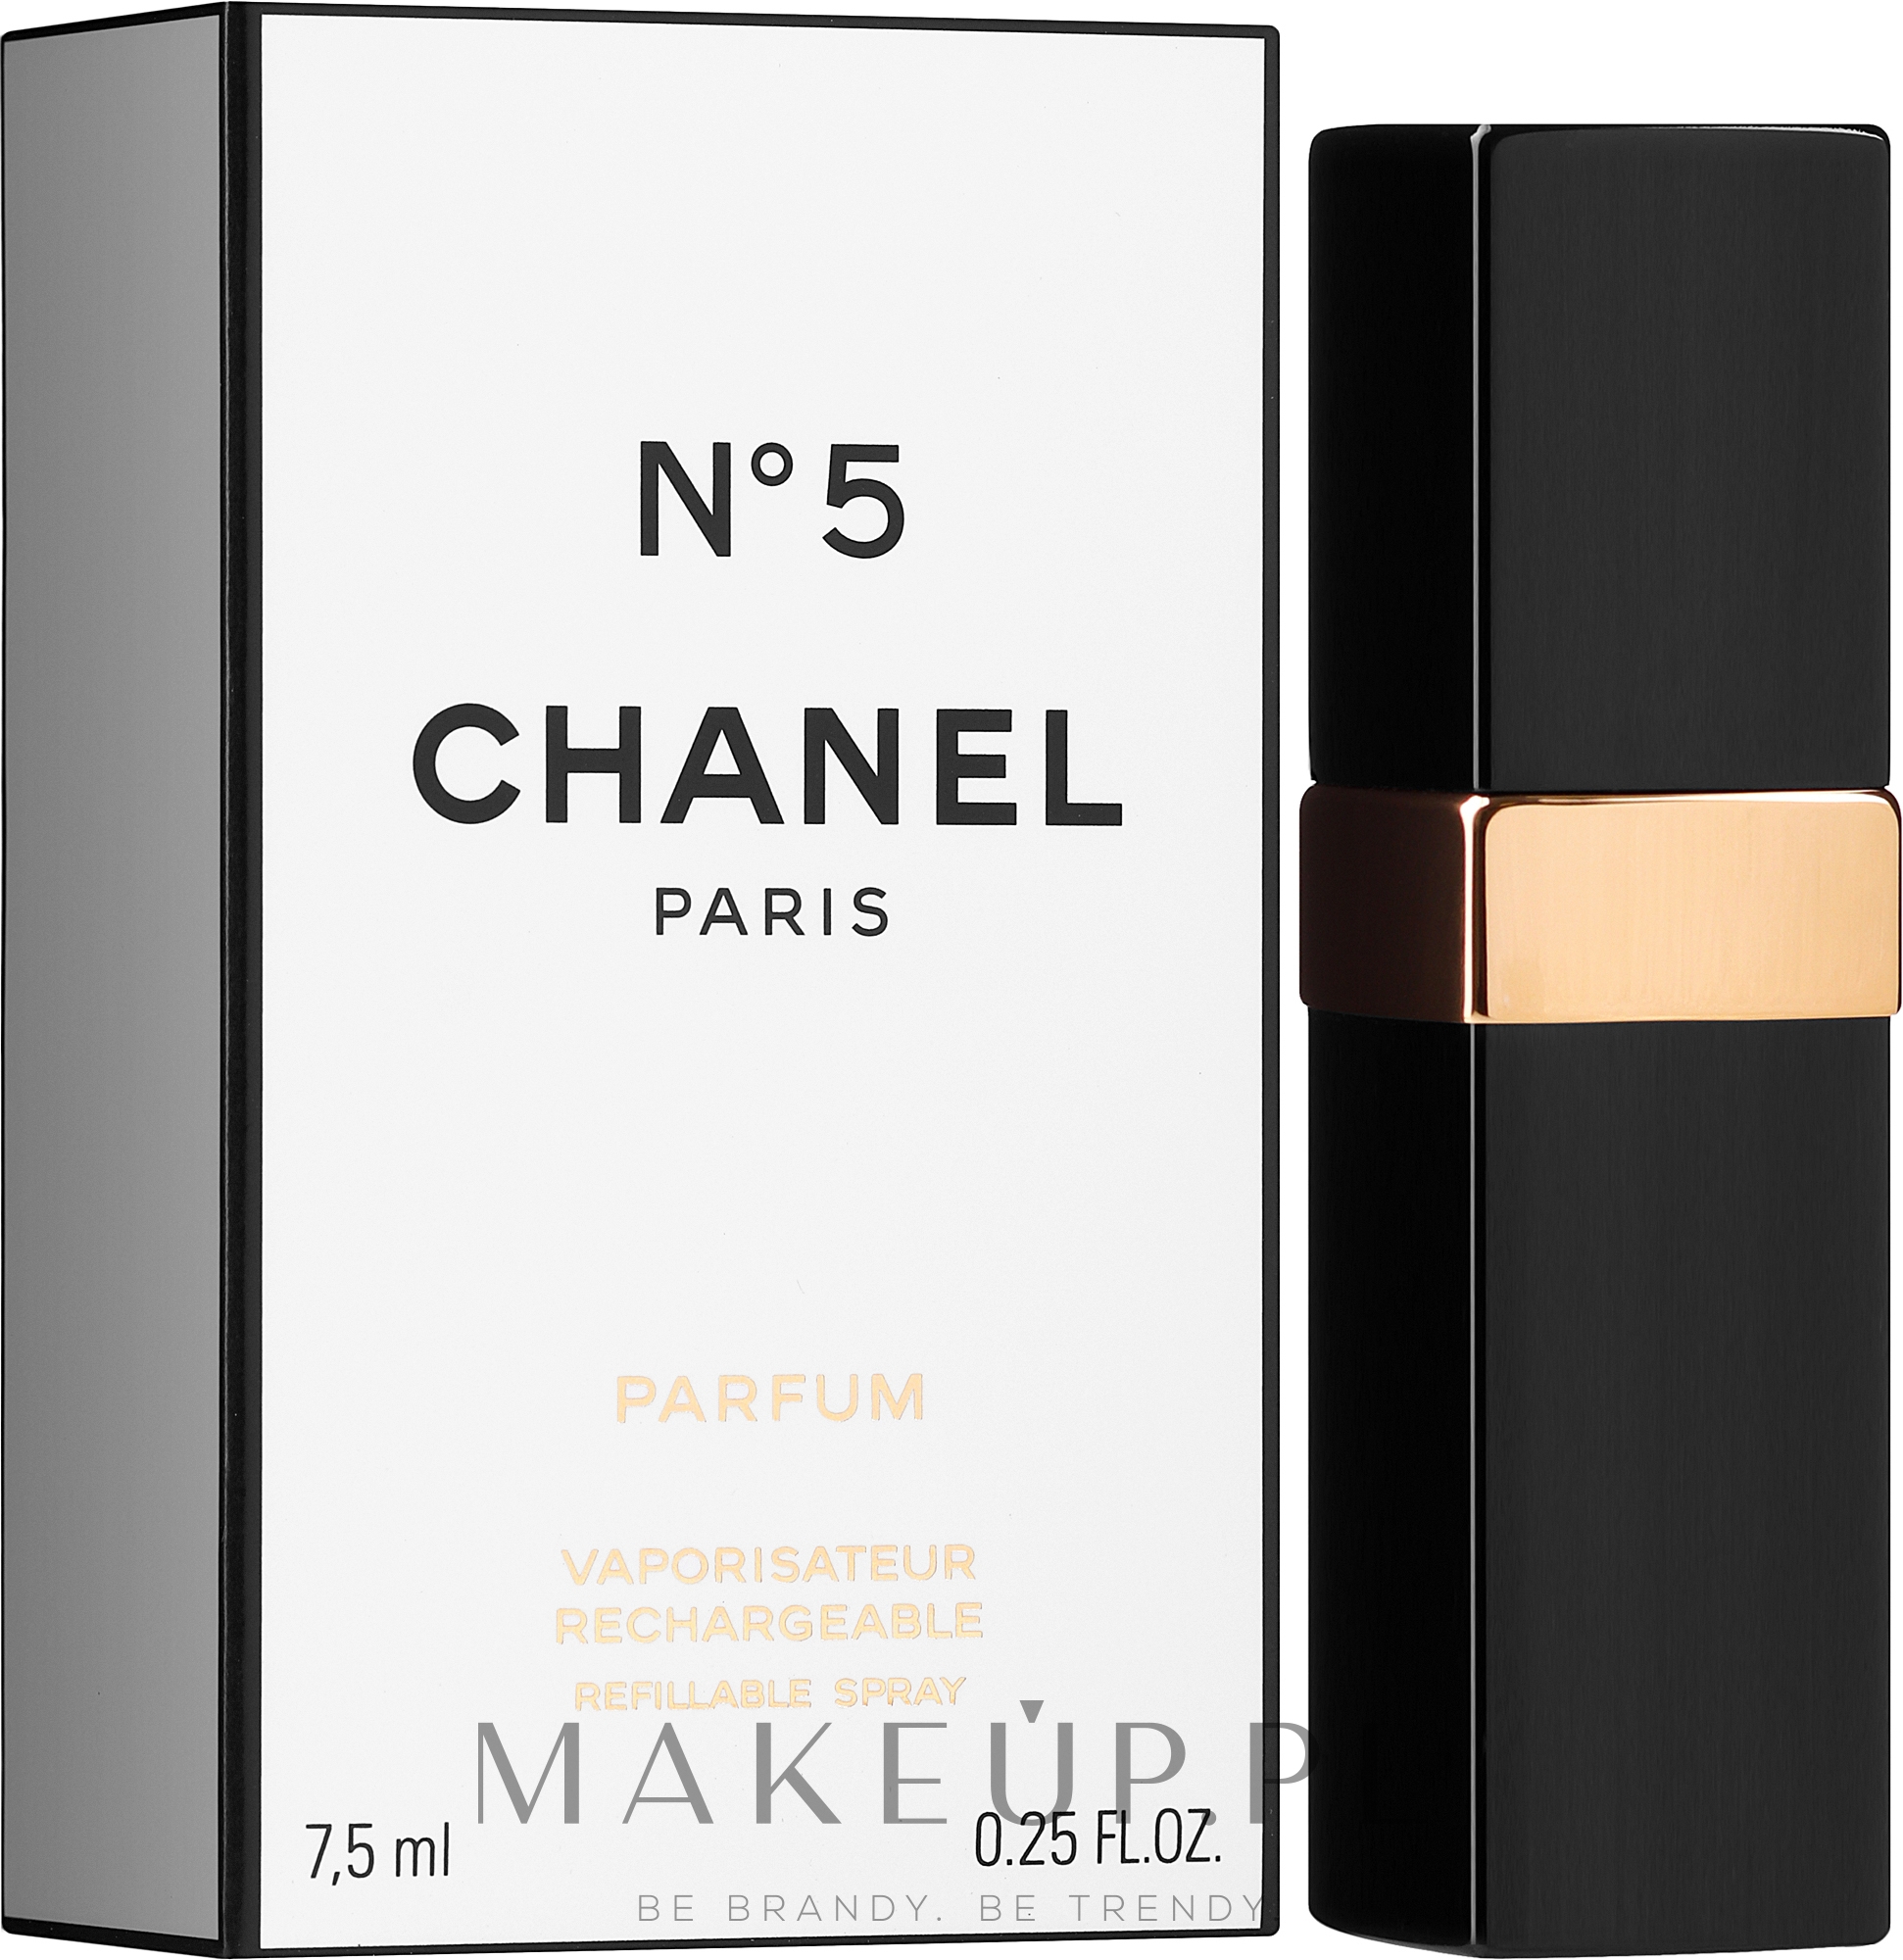 Chanel N5 - Perfumy (refillable spray-spray z możliwością napełniania) — Zdjęcie 7.5 ml